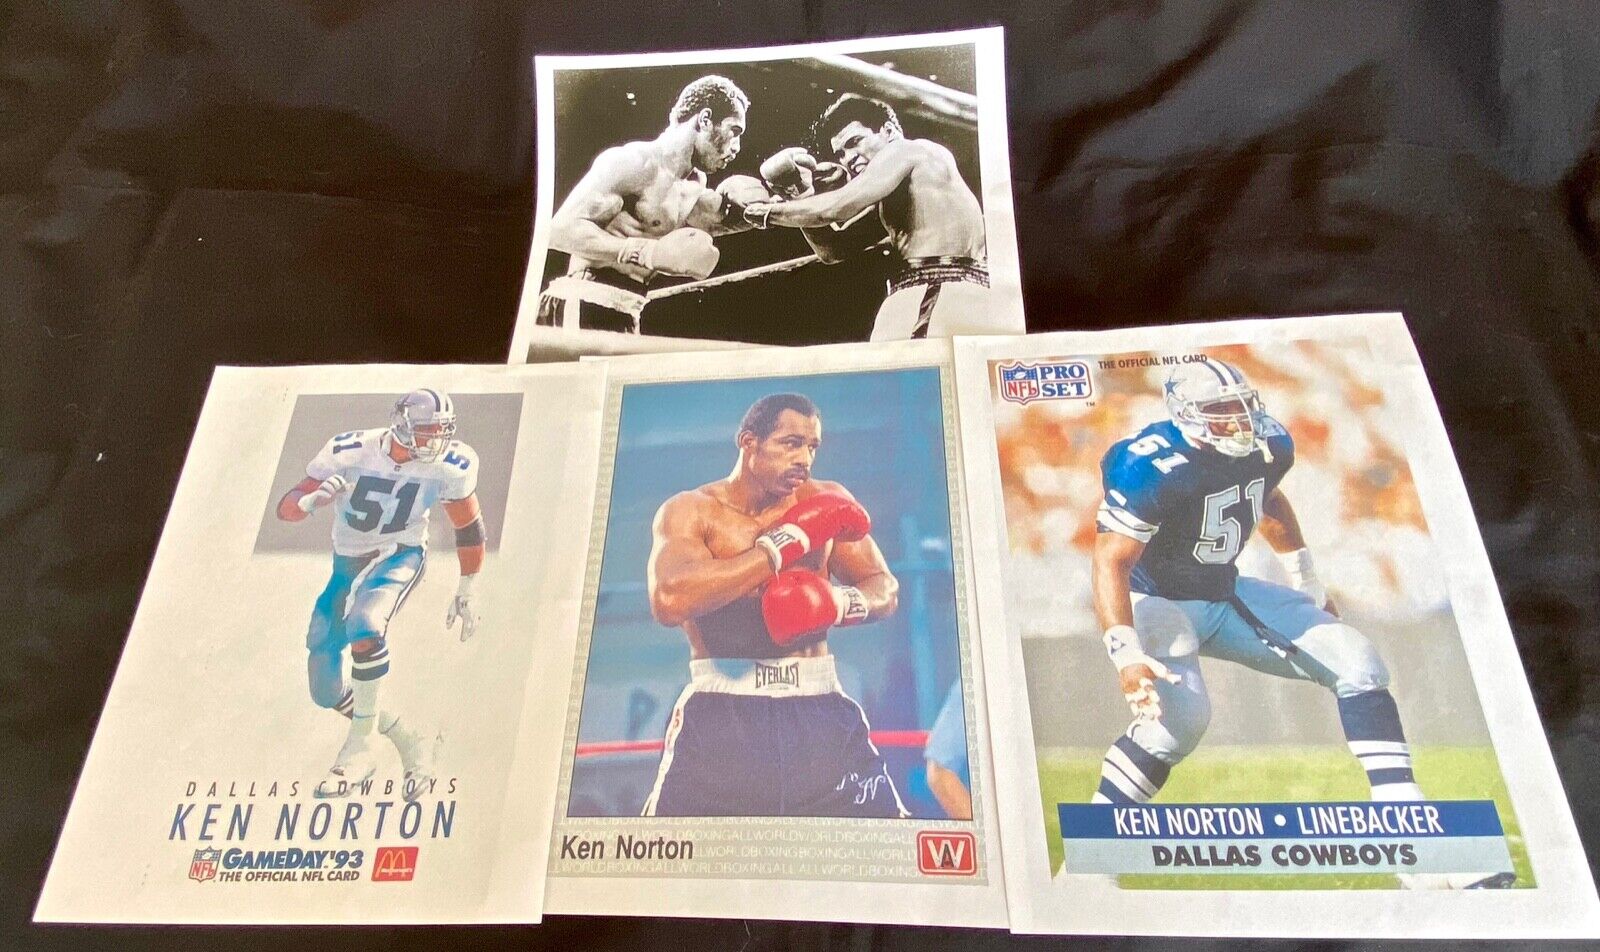 KEN NORTON (boxing) + KEN NORTON JR. (NFL) ACTION PHOTO COPIES ( Lot of 4) NFL pro set